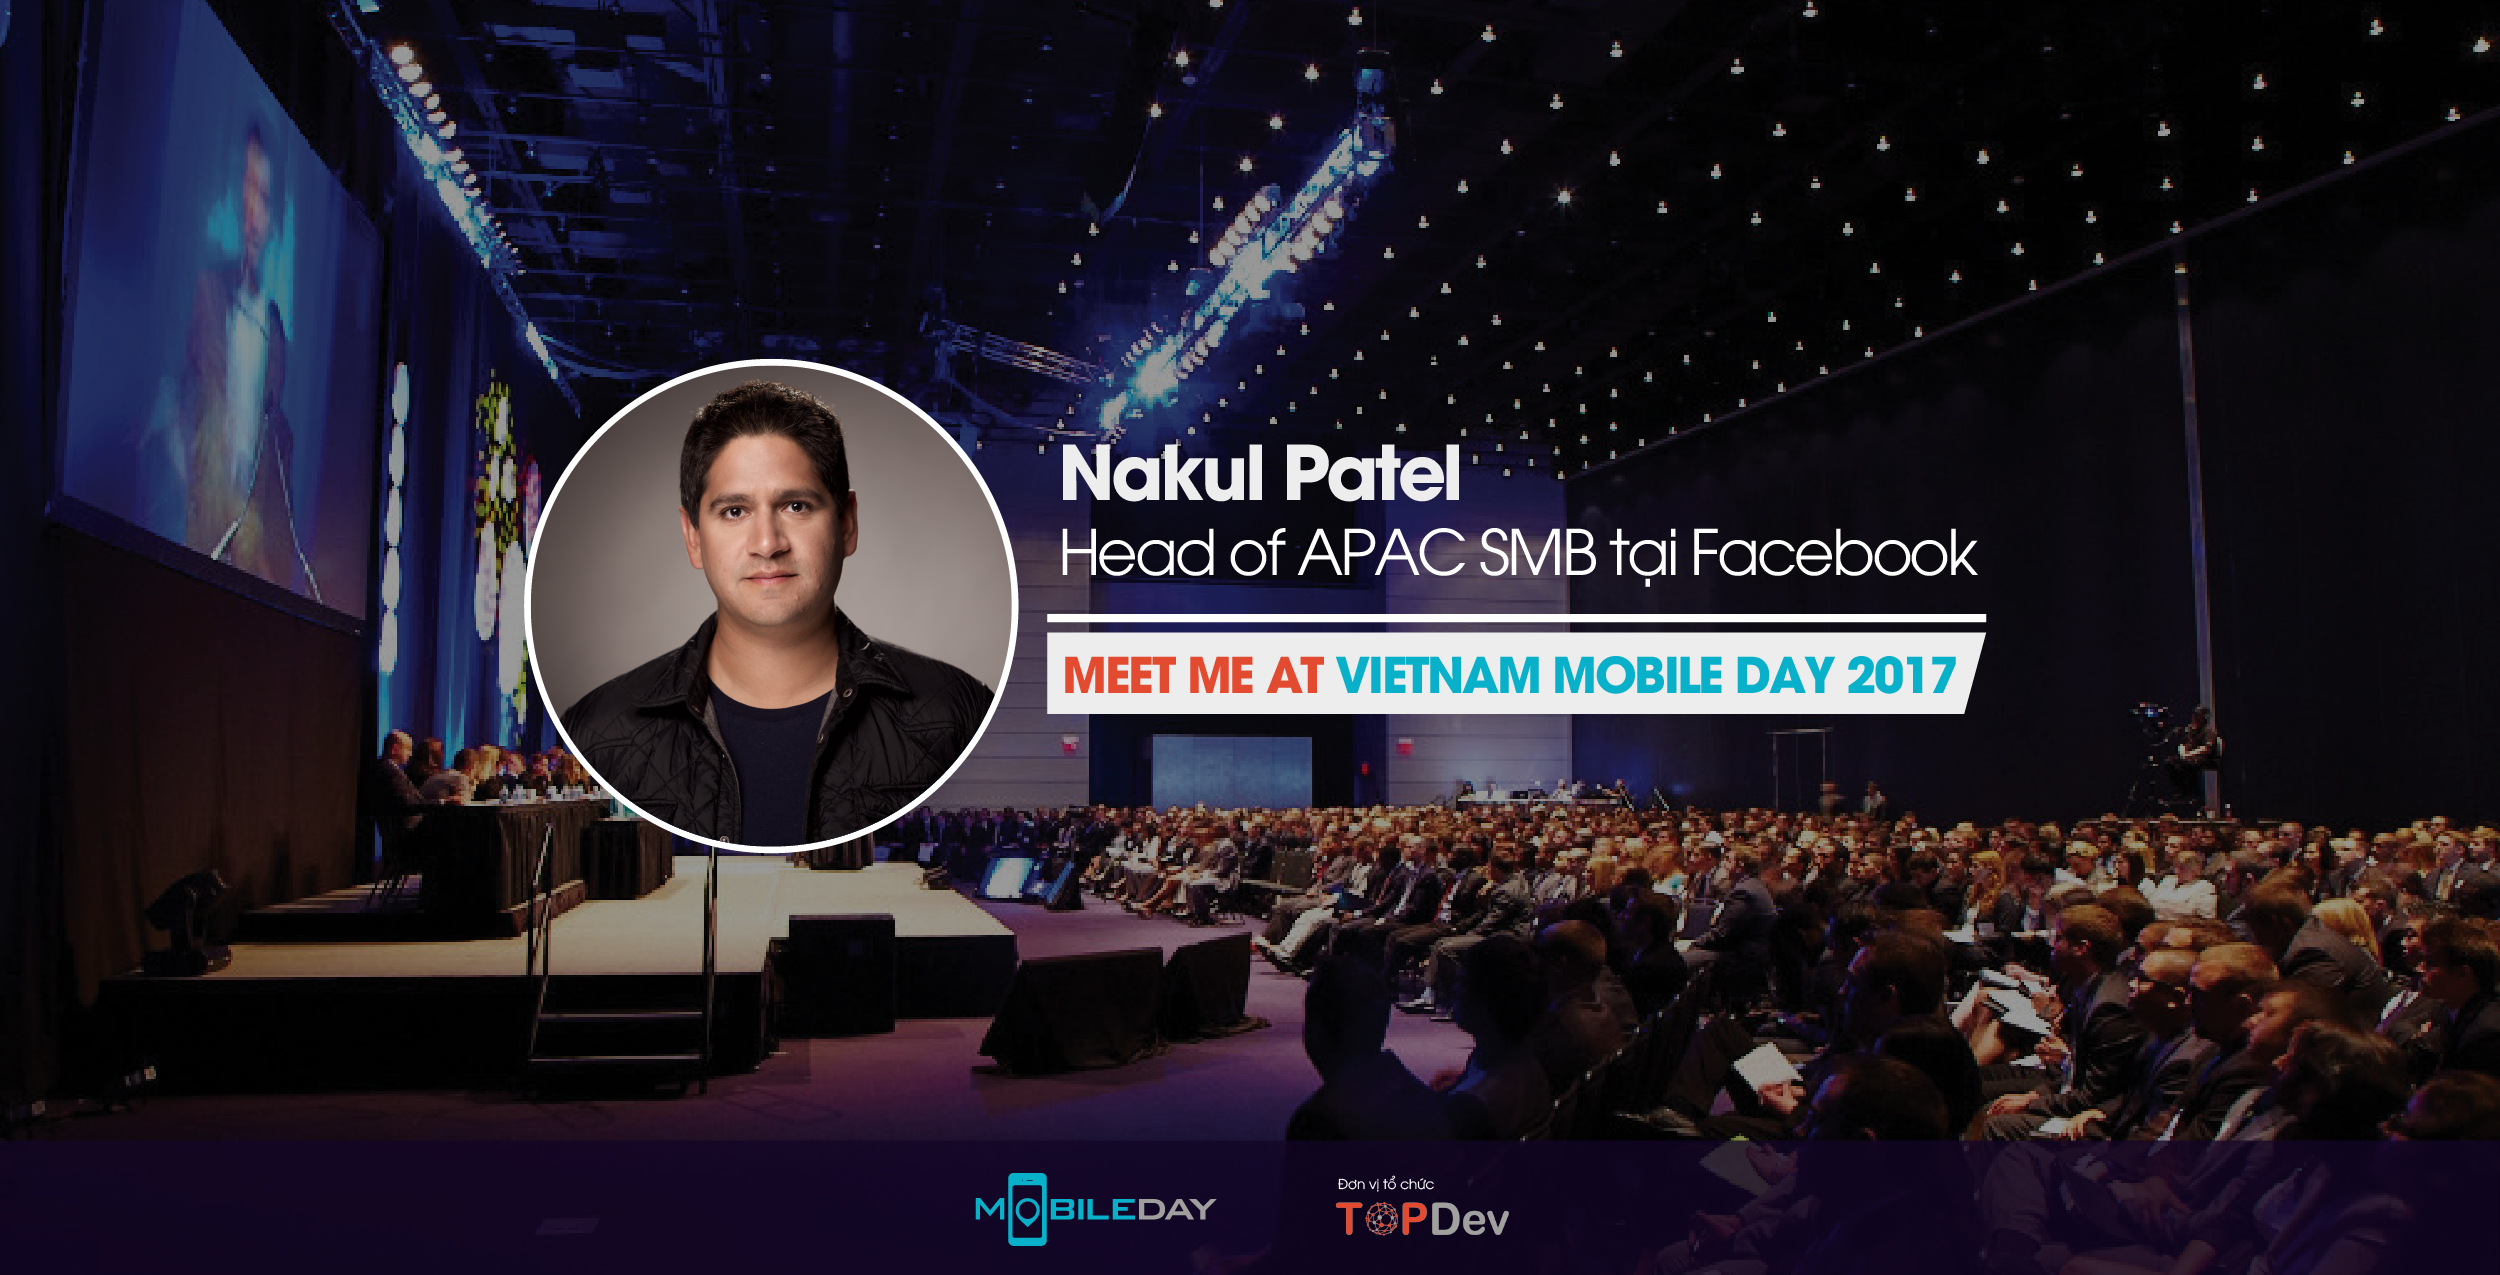 Gặp gỡ chuyên gia Facebook tại Vietnam Mobile Day